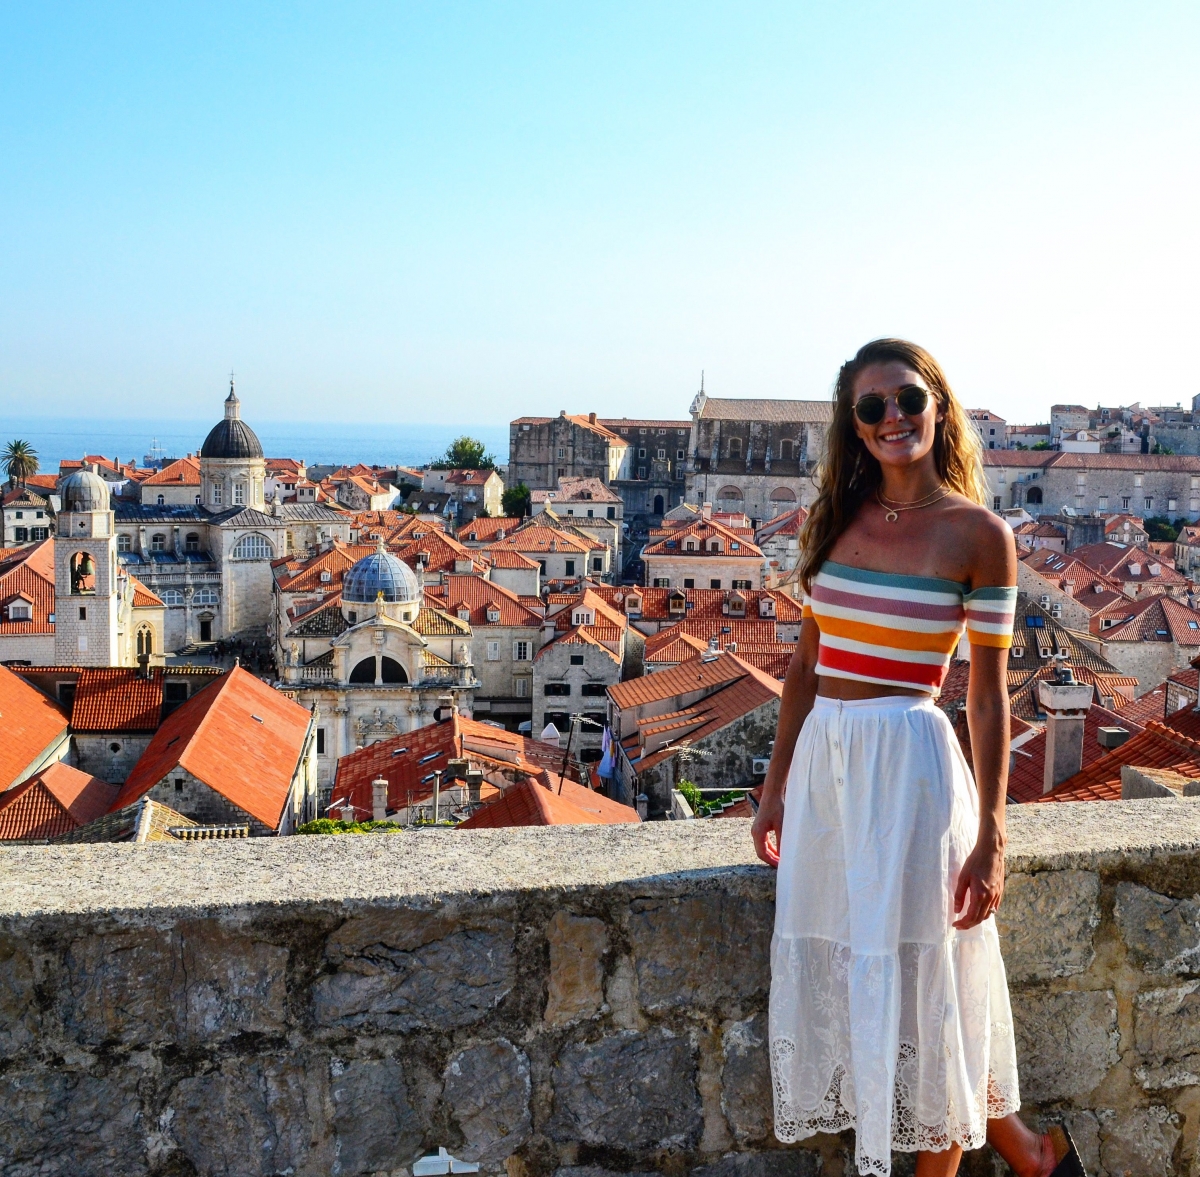 Lớp tường thành bao quanh, những ngôi nhà mái ngói đỏ là đặc trưng của Dubrovnik